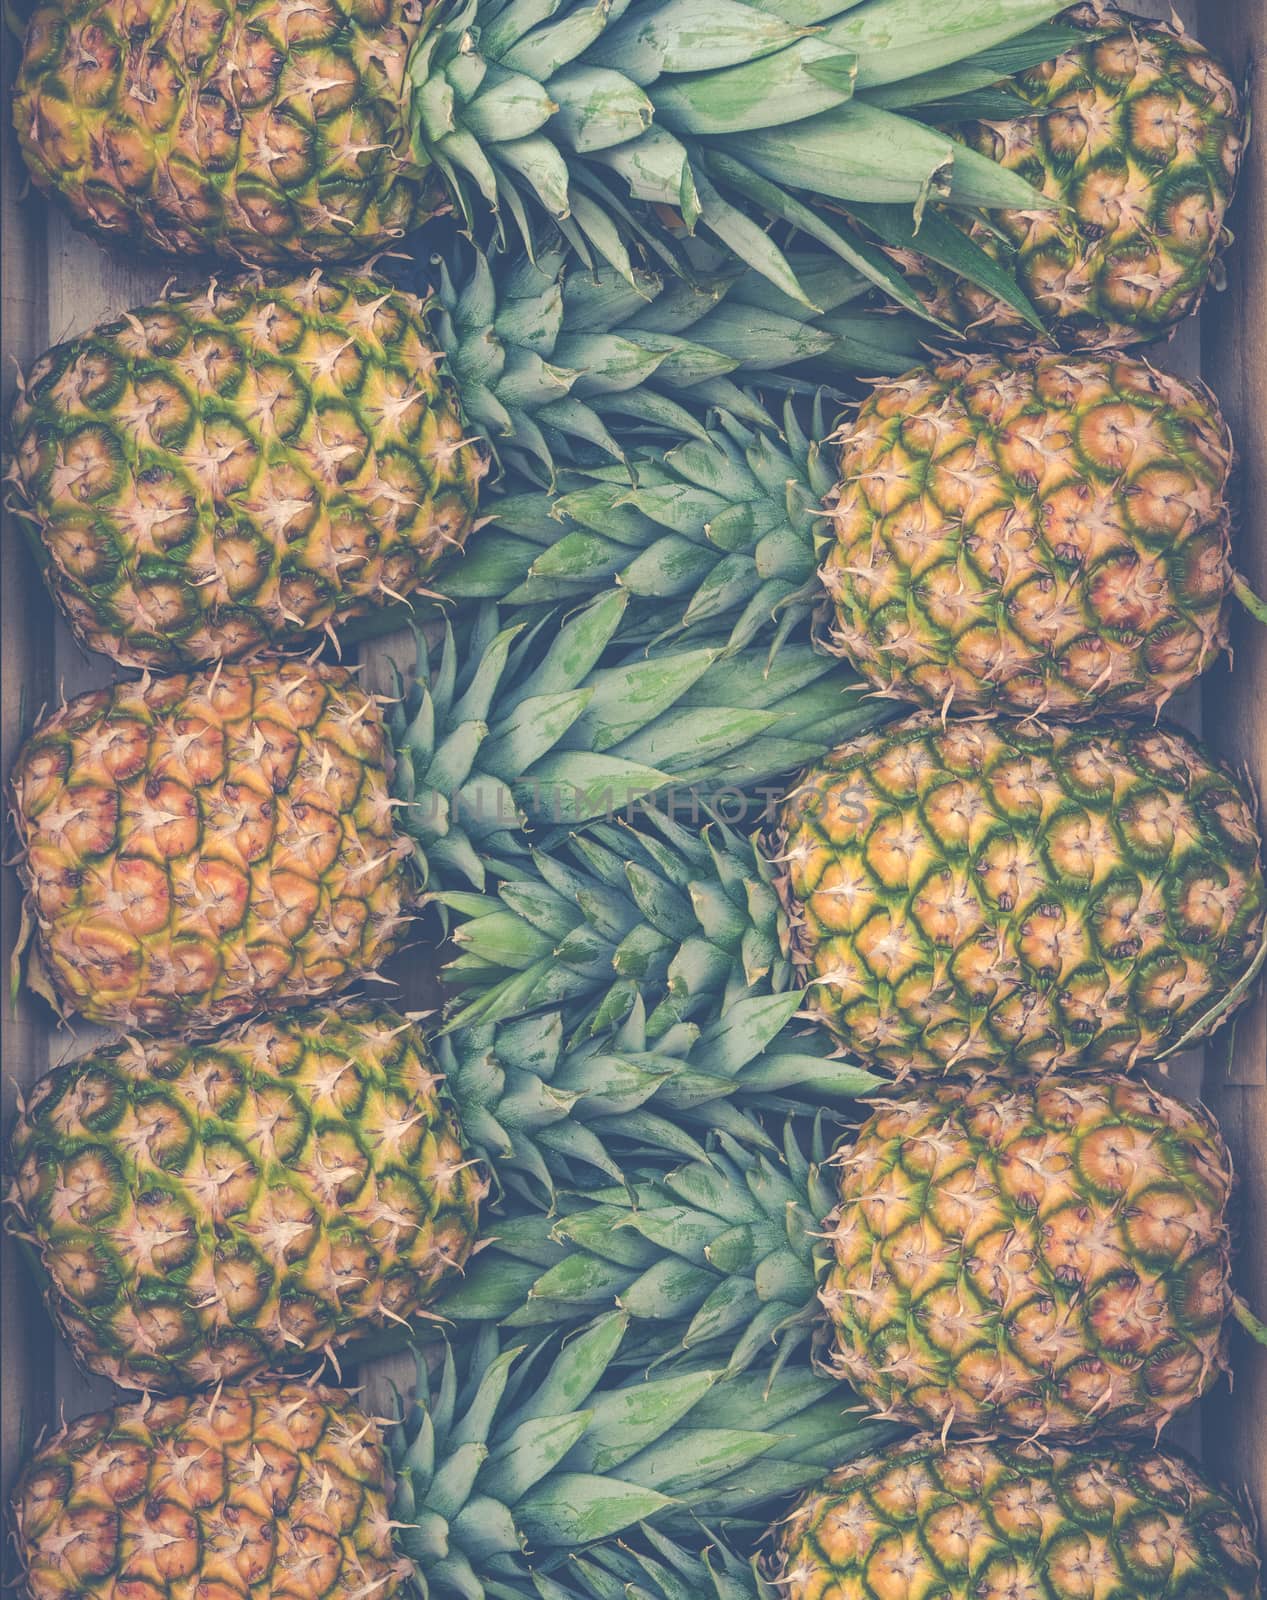 Fresh Market Pineapples by mrdoomits